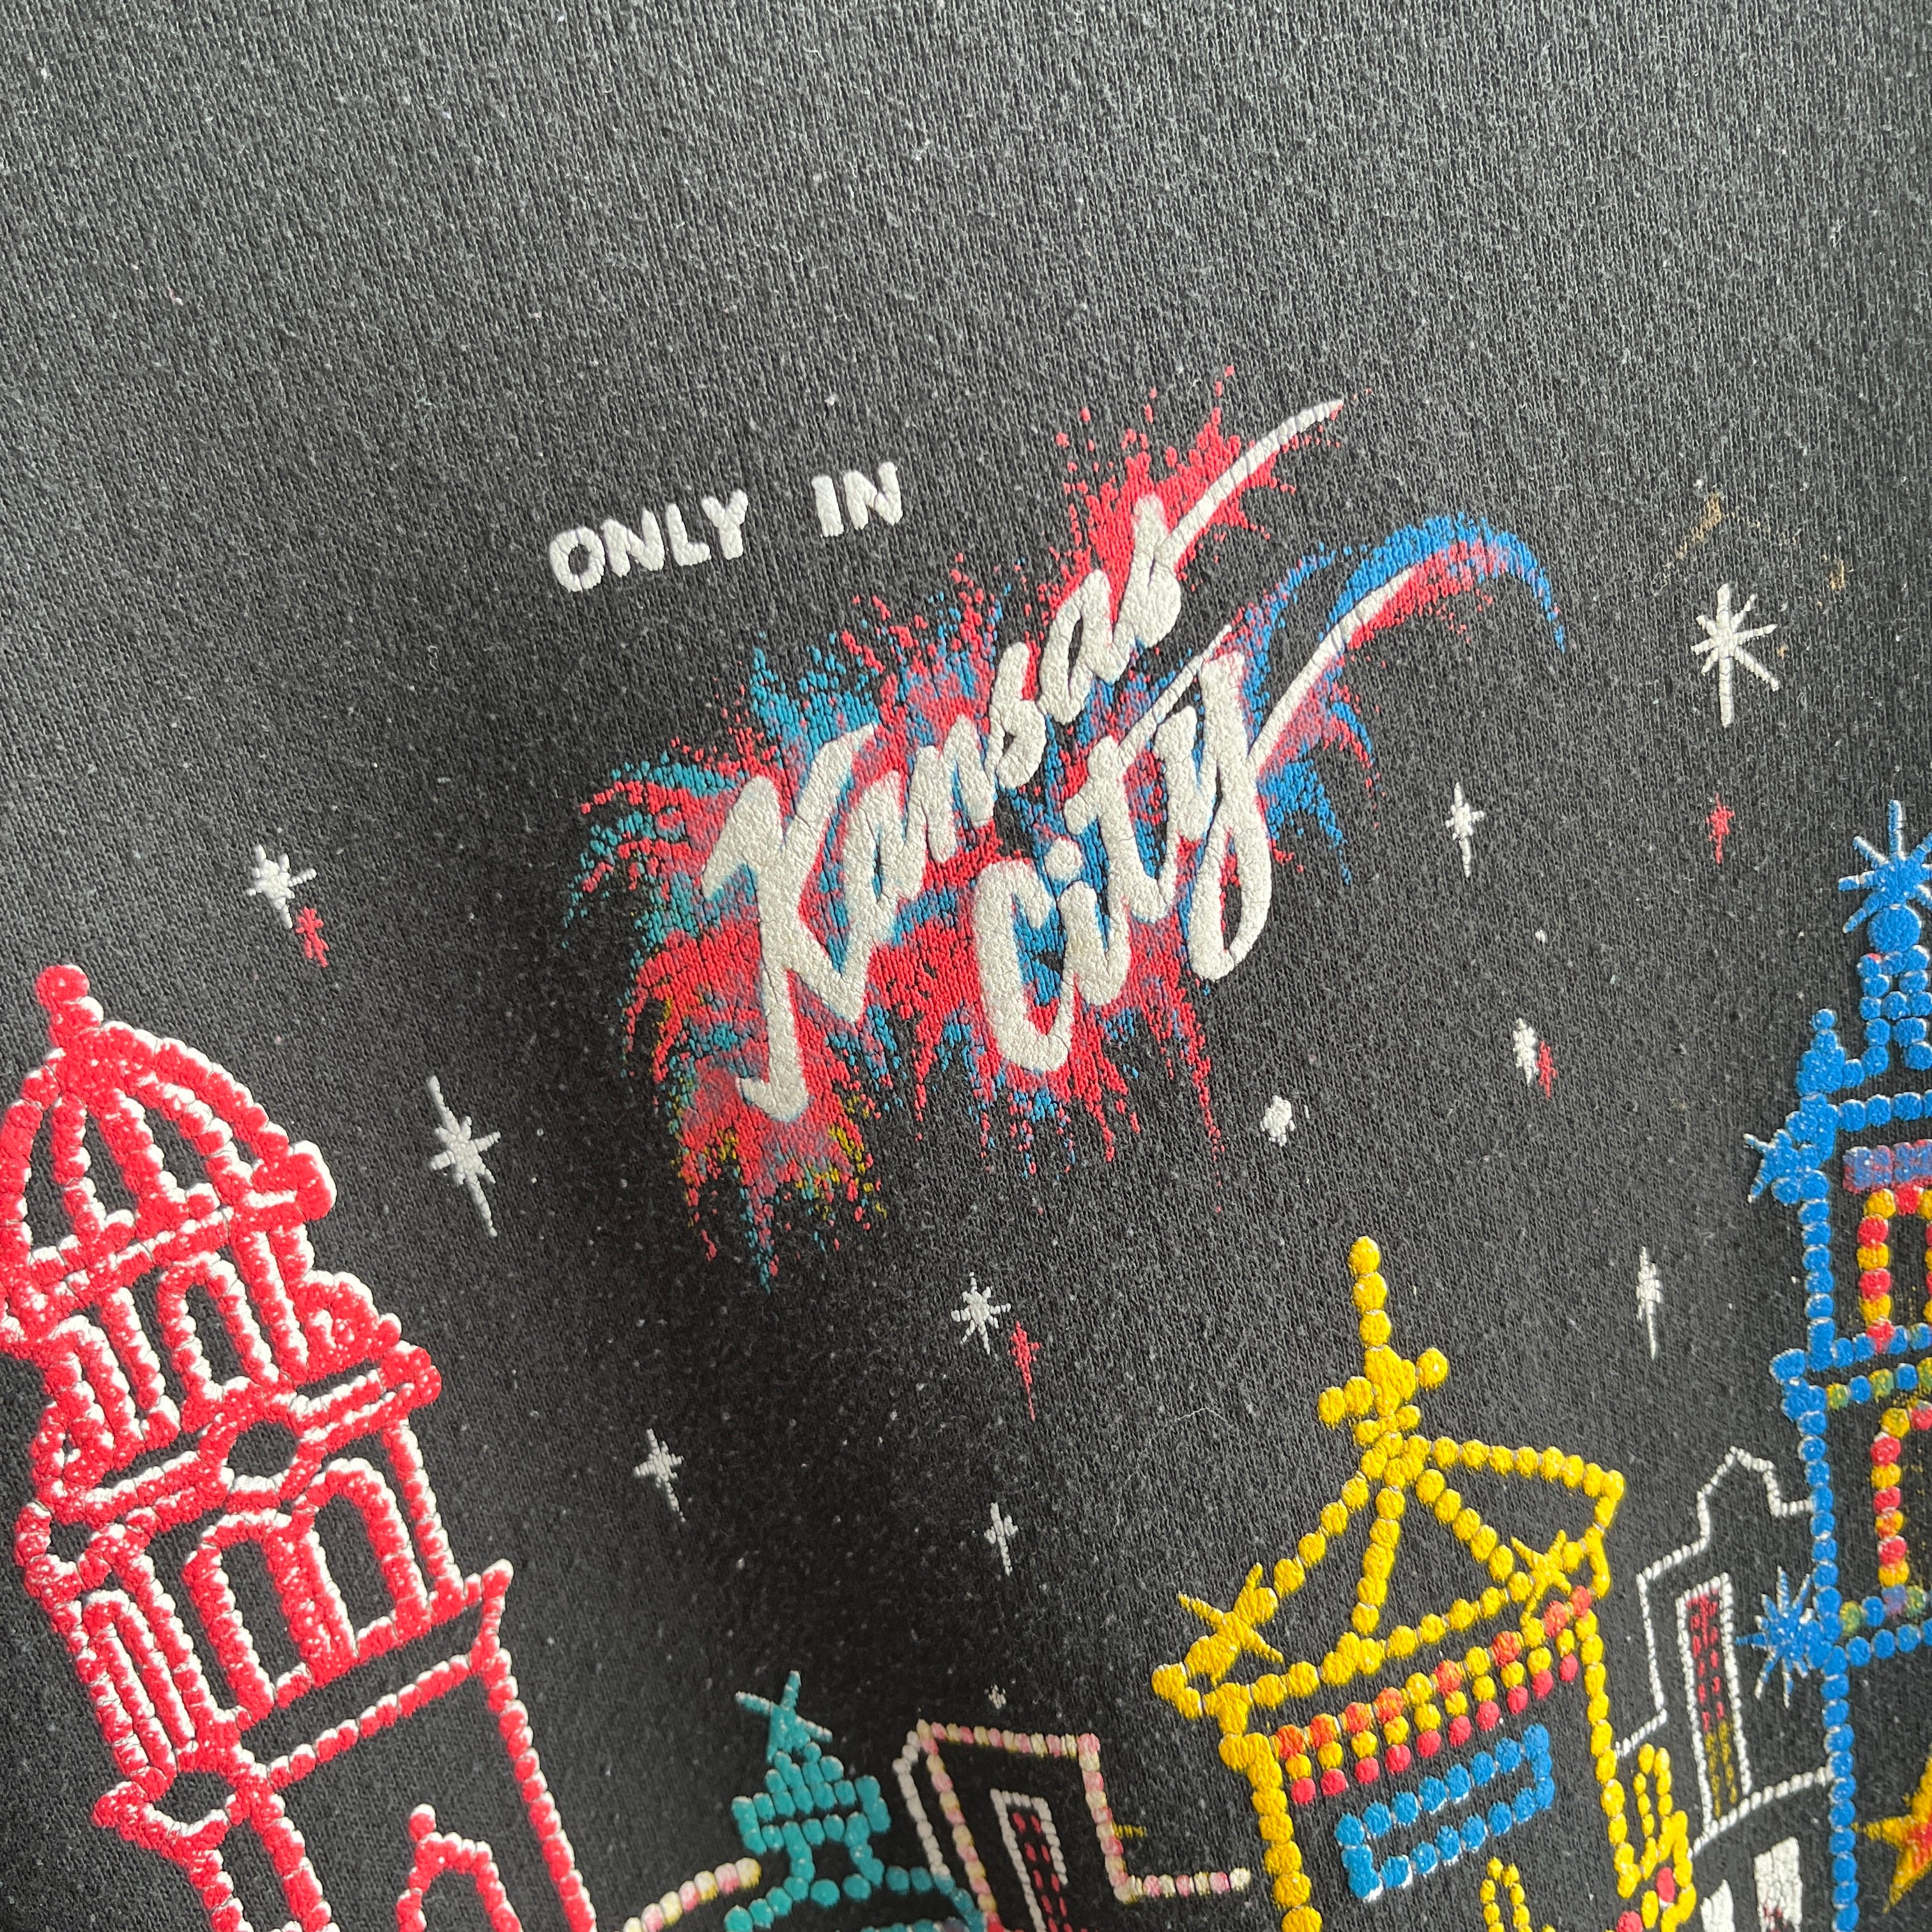 1980s Kansas City Graphic Sweatshirt